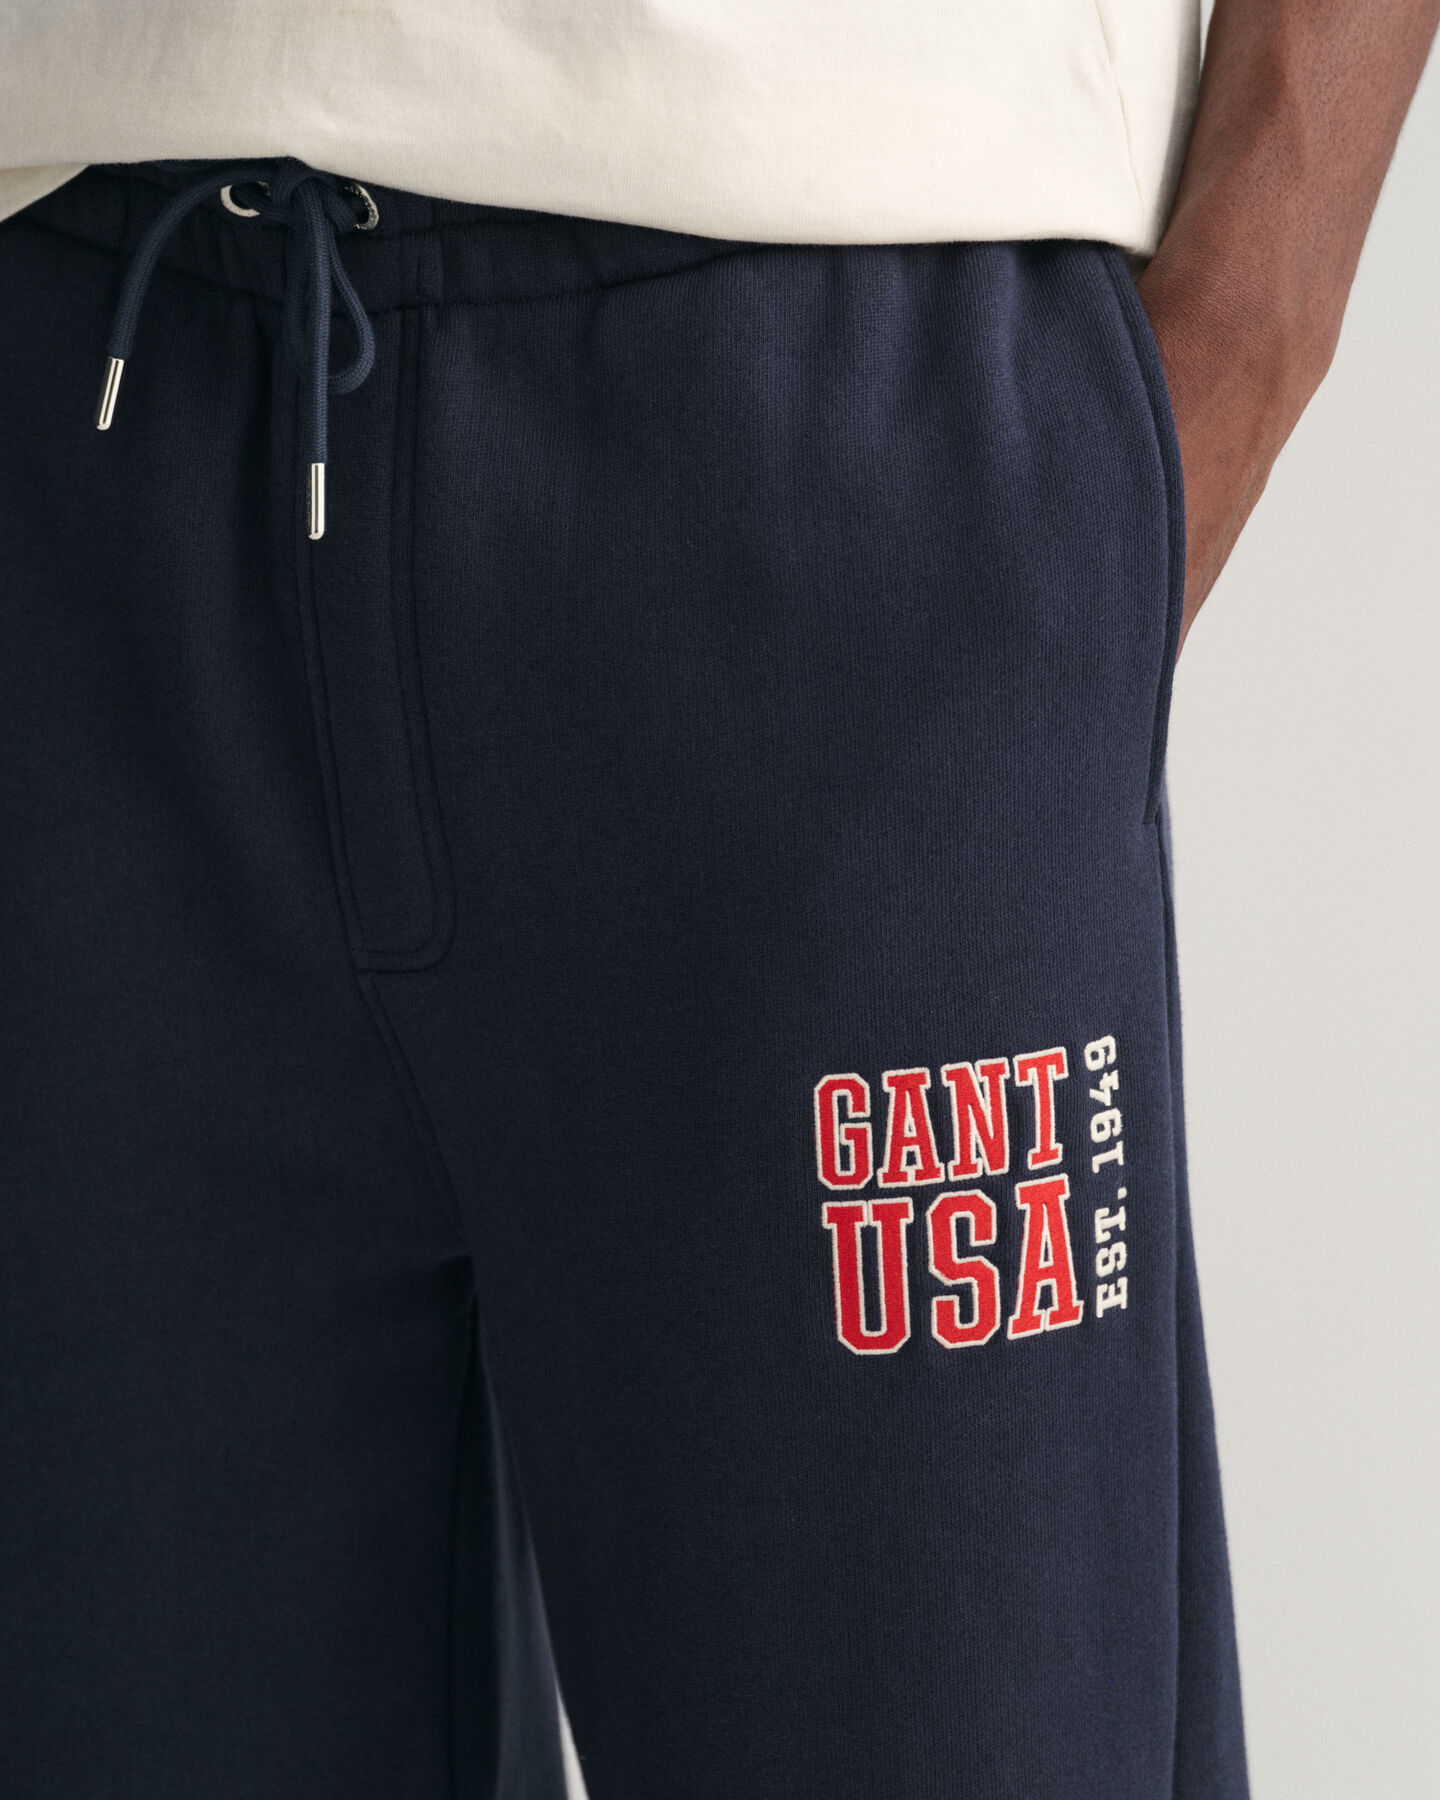 GANT USA Sweatpants - GANT